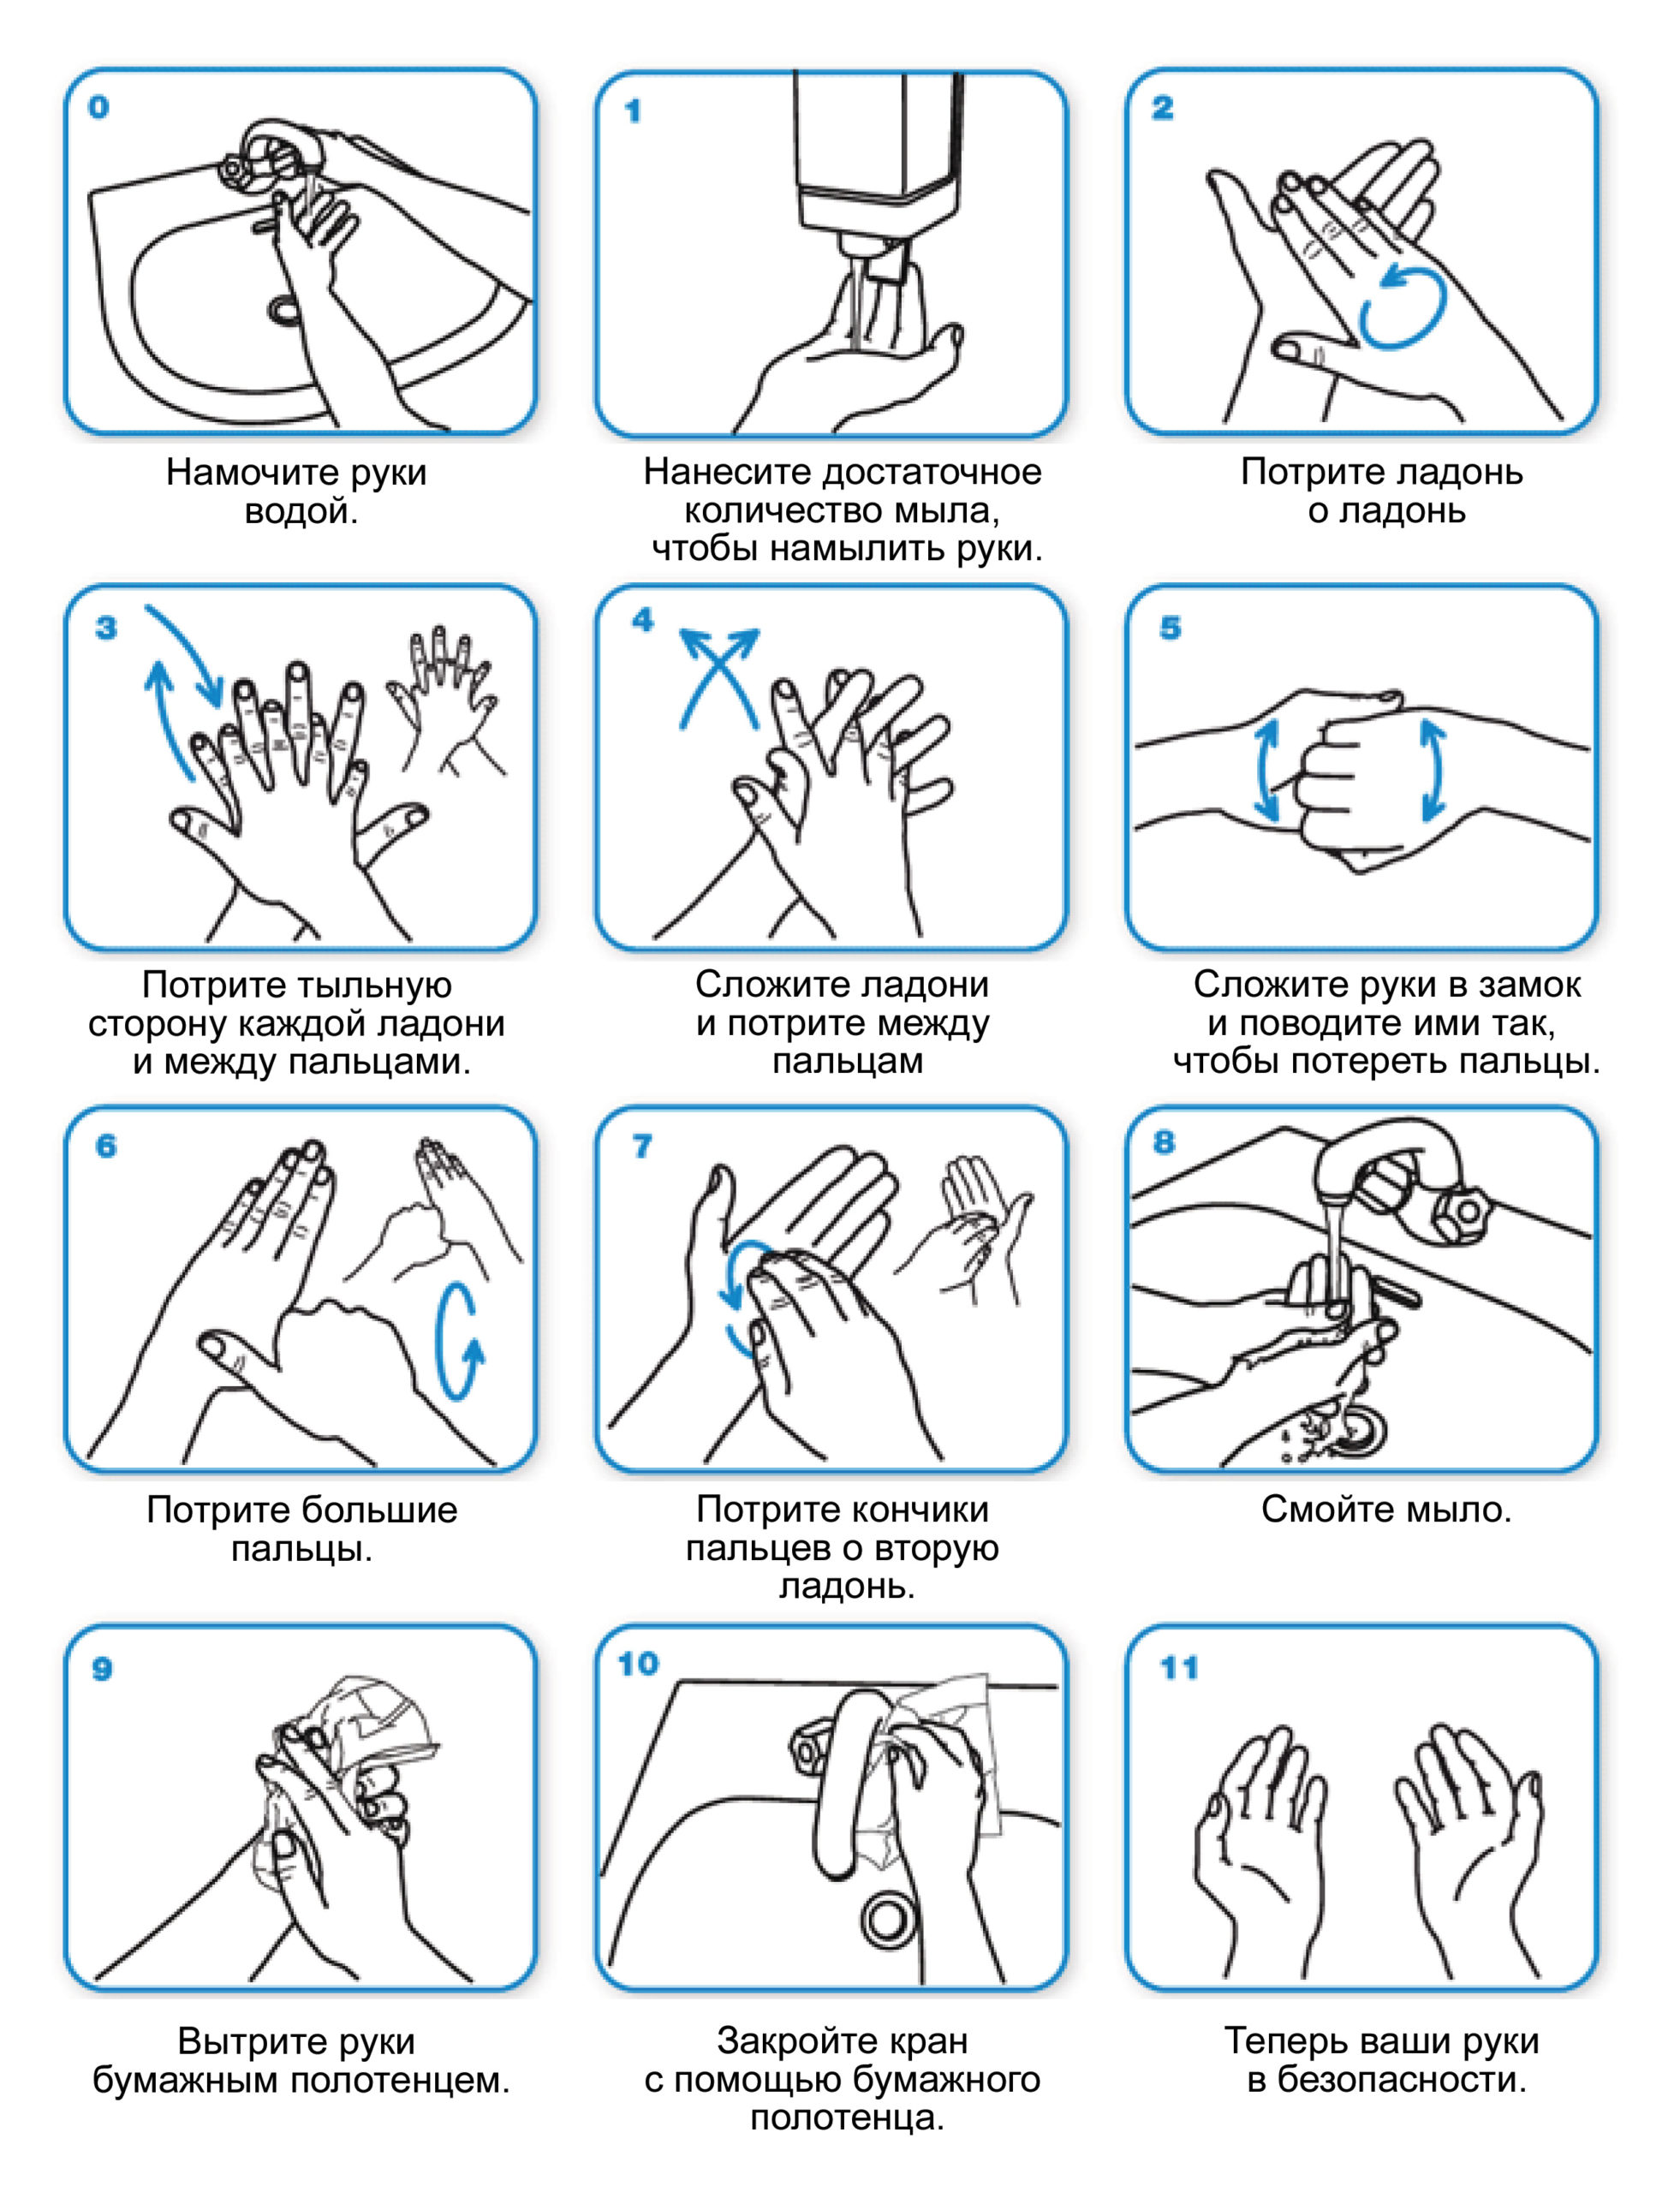 Как правильно мыть руки, чтобы не заразиться коронавирусом? Подробная инструкция